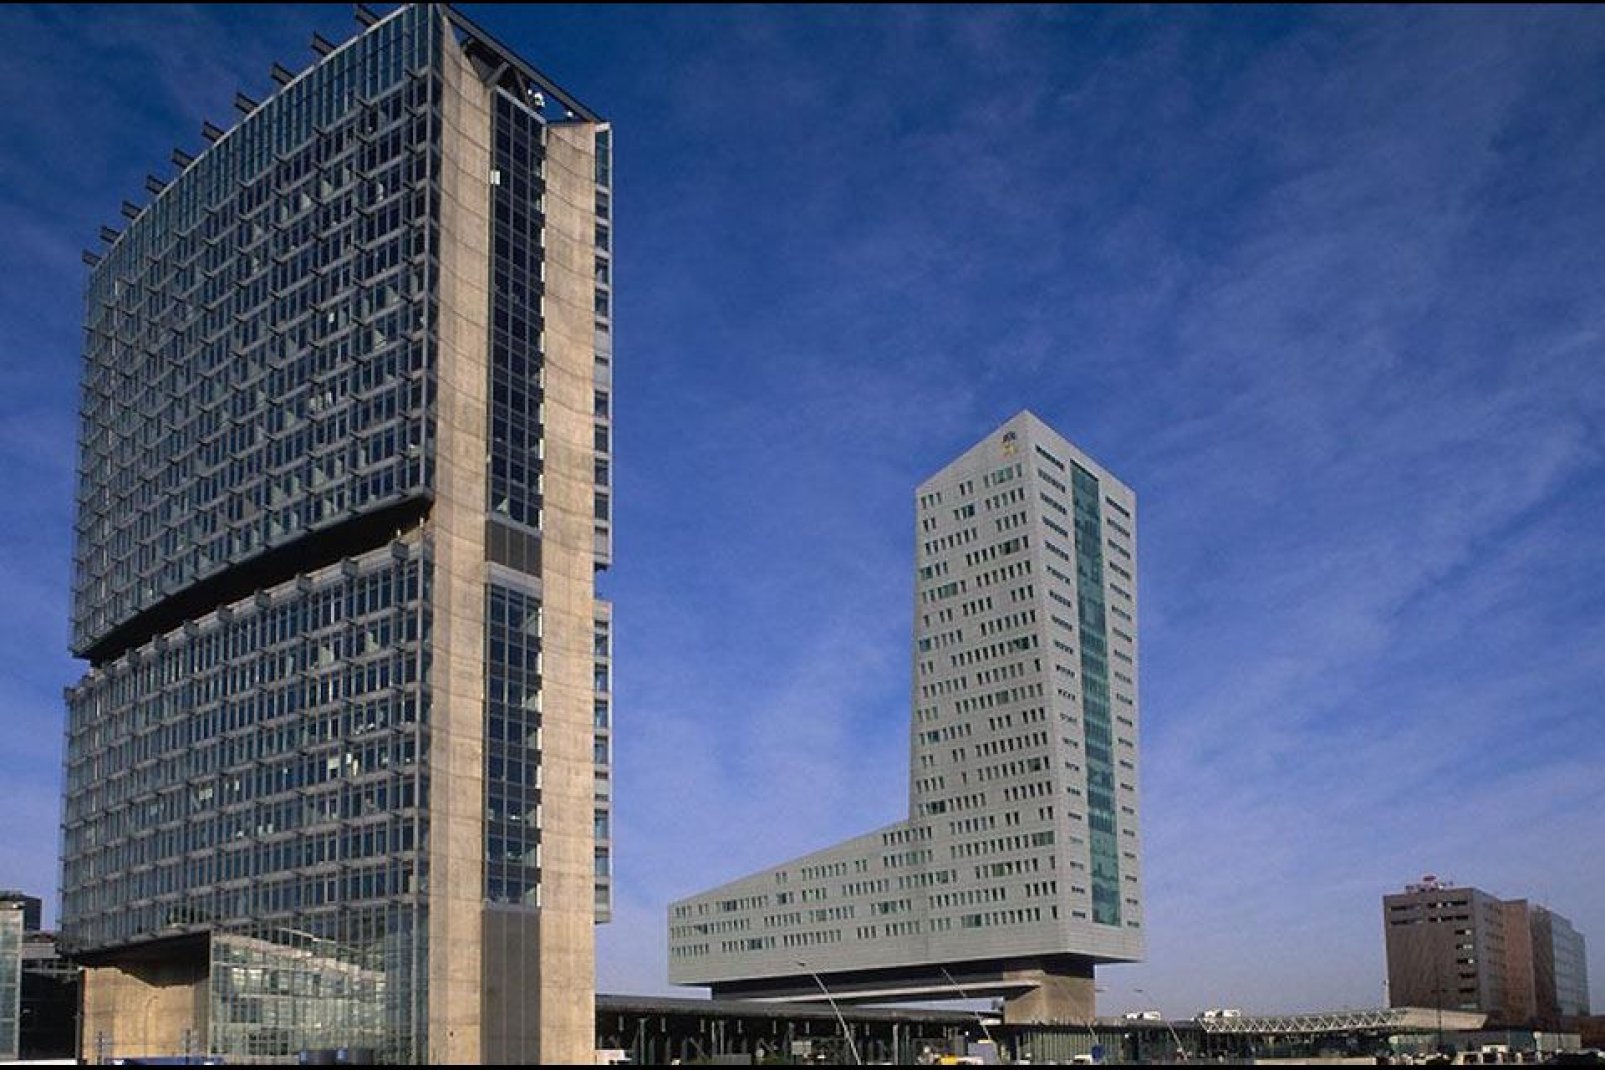 Les projets d'aménagements sont nombreux à Lille, par exemple, le Grand Projet Urbain  prévoit la construction de 3400 nouveaux logements